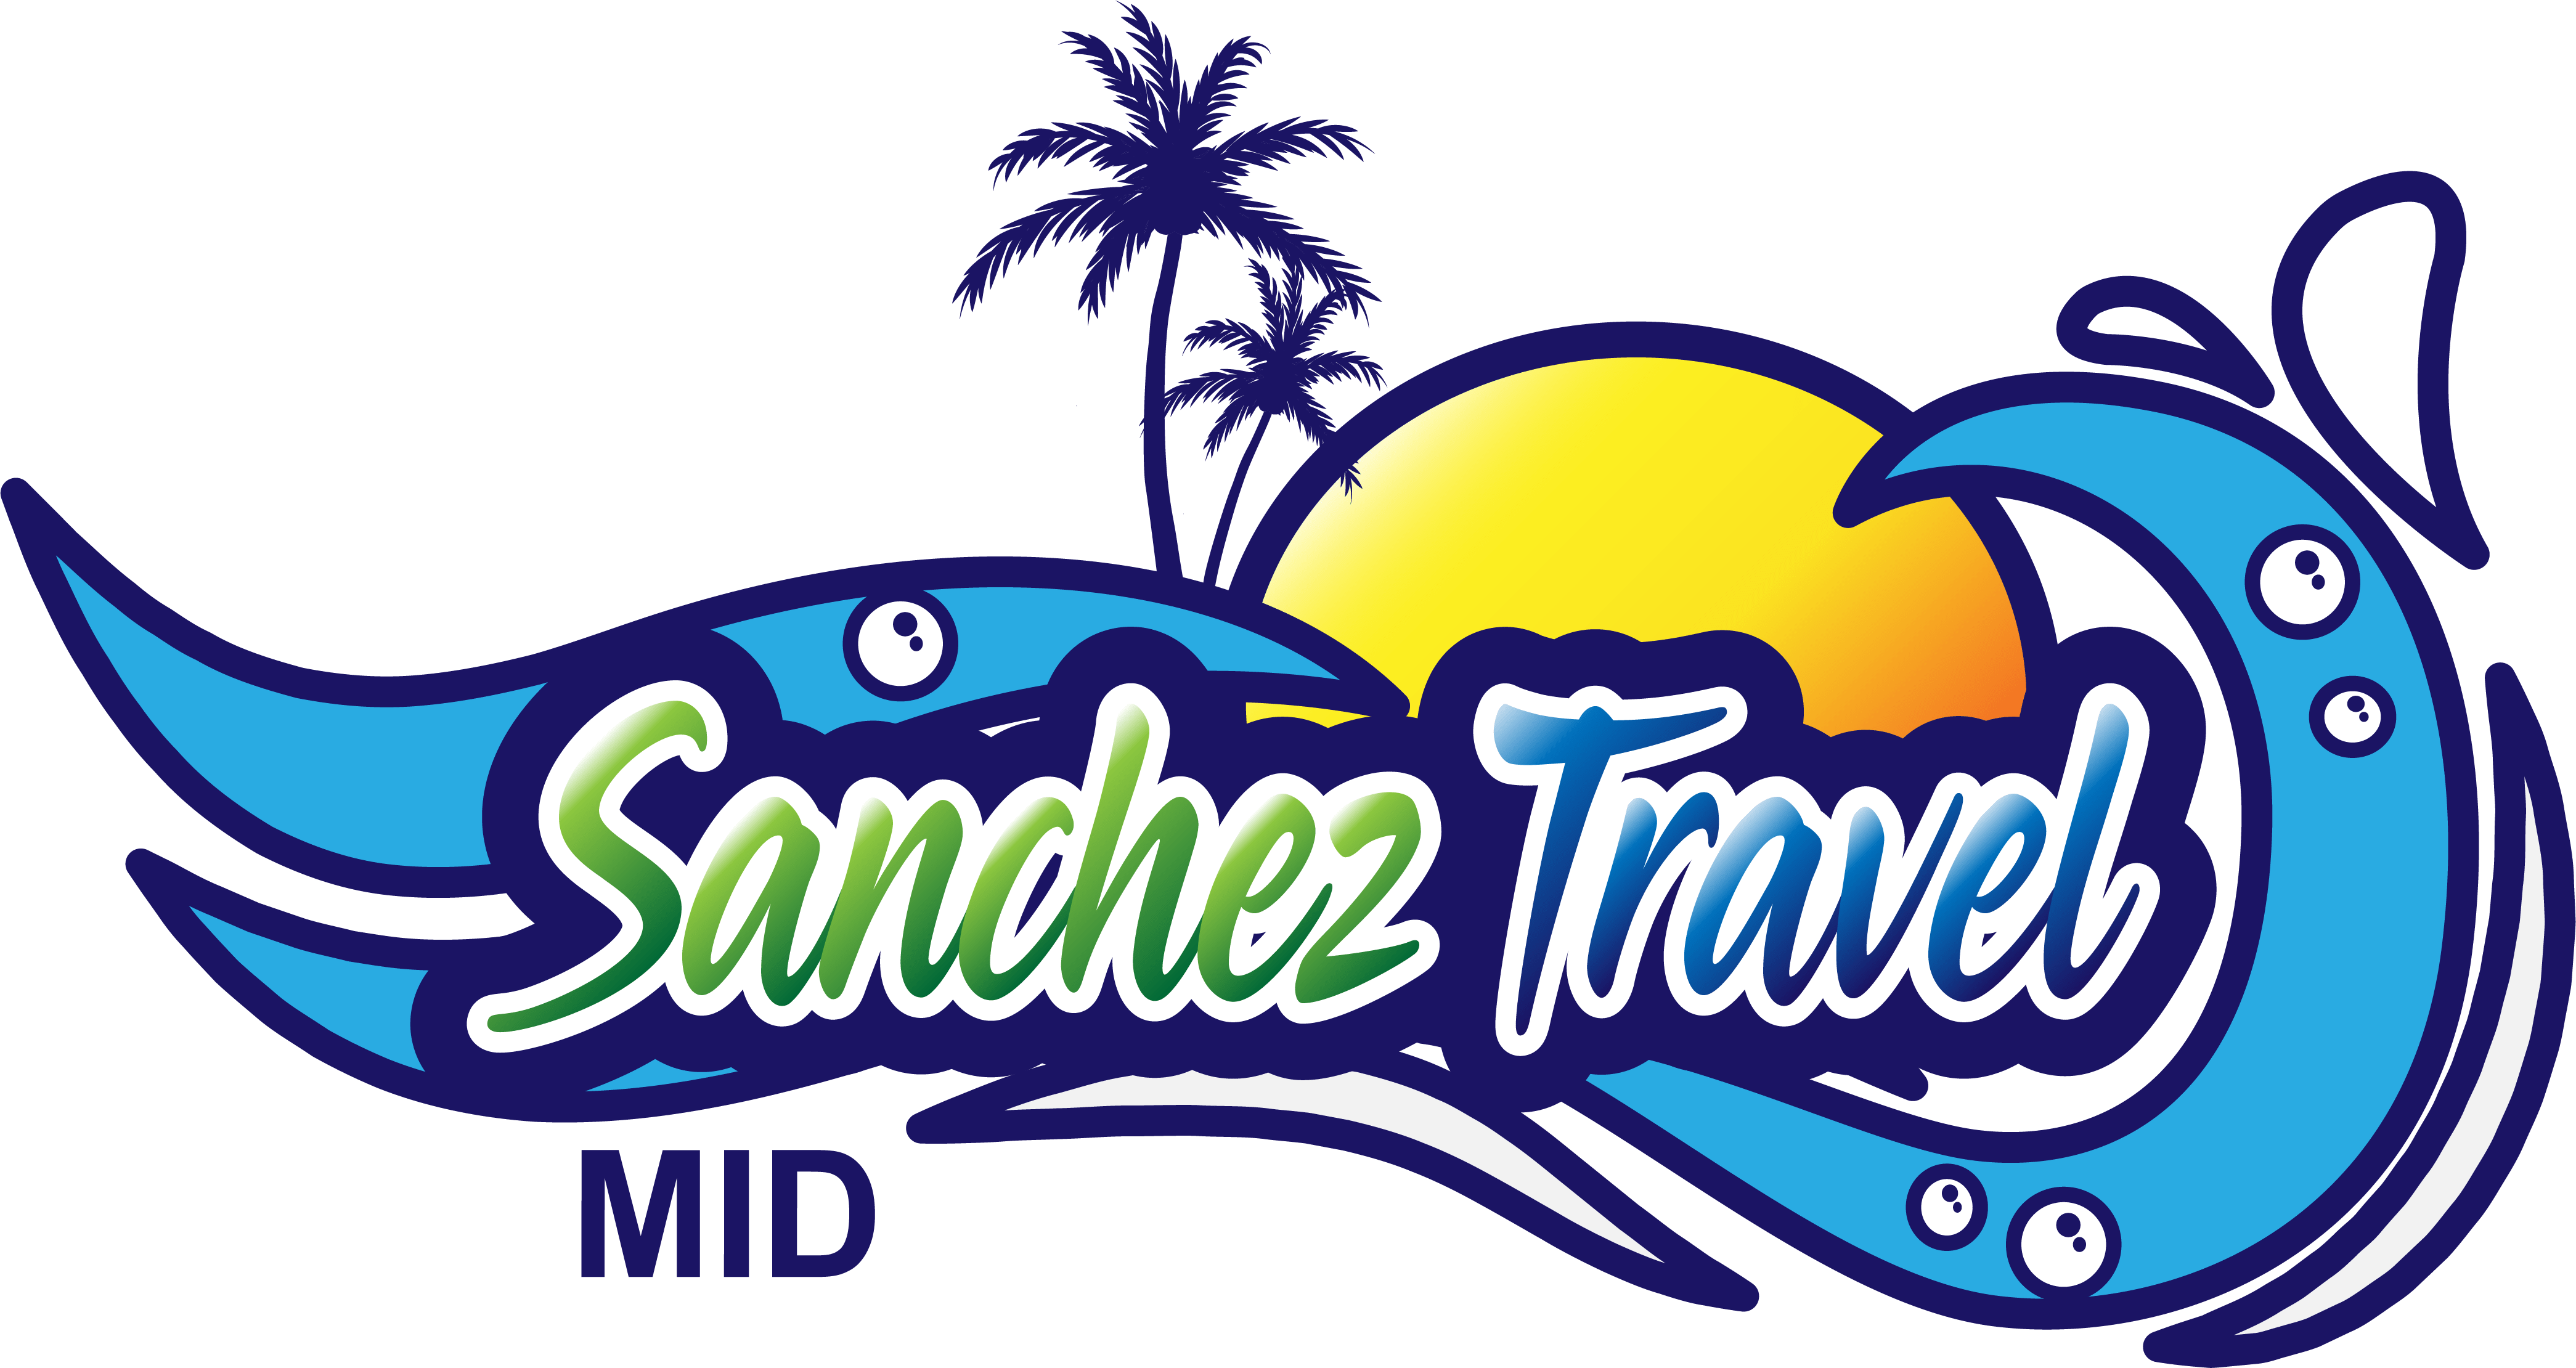 Sánchez travel mid